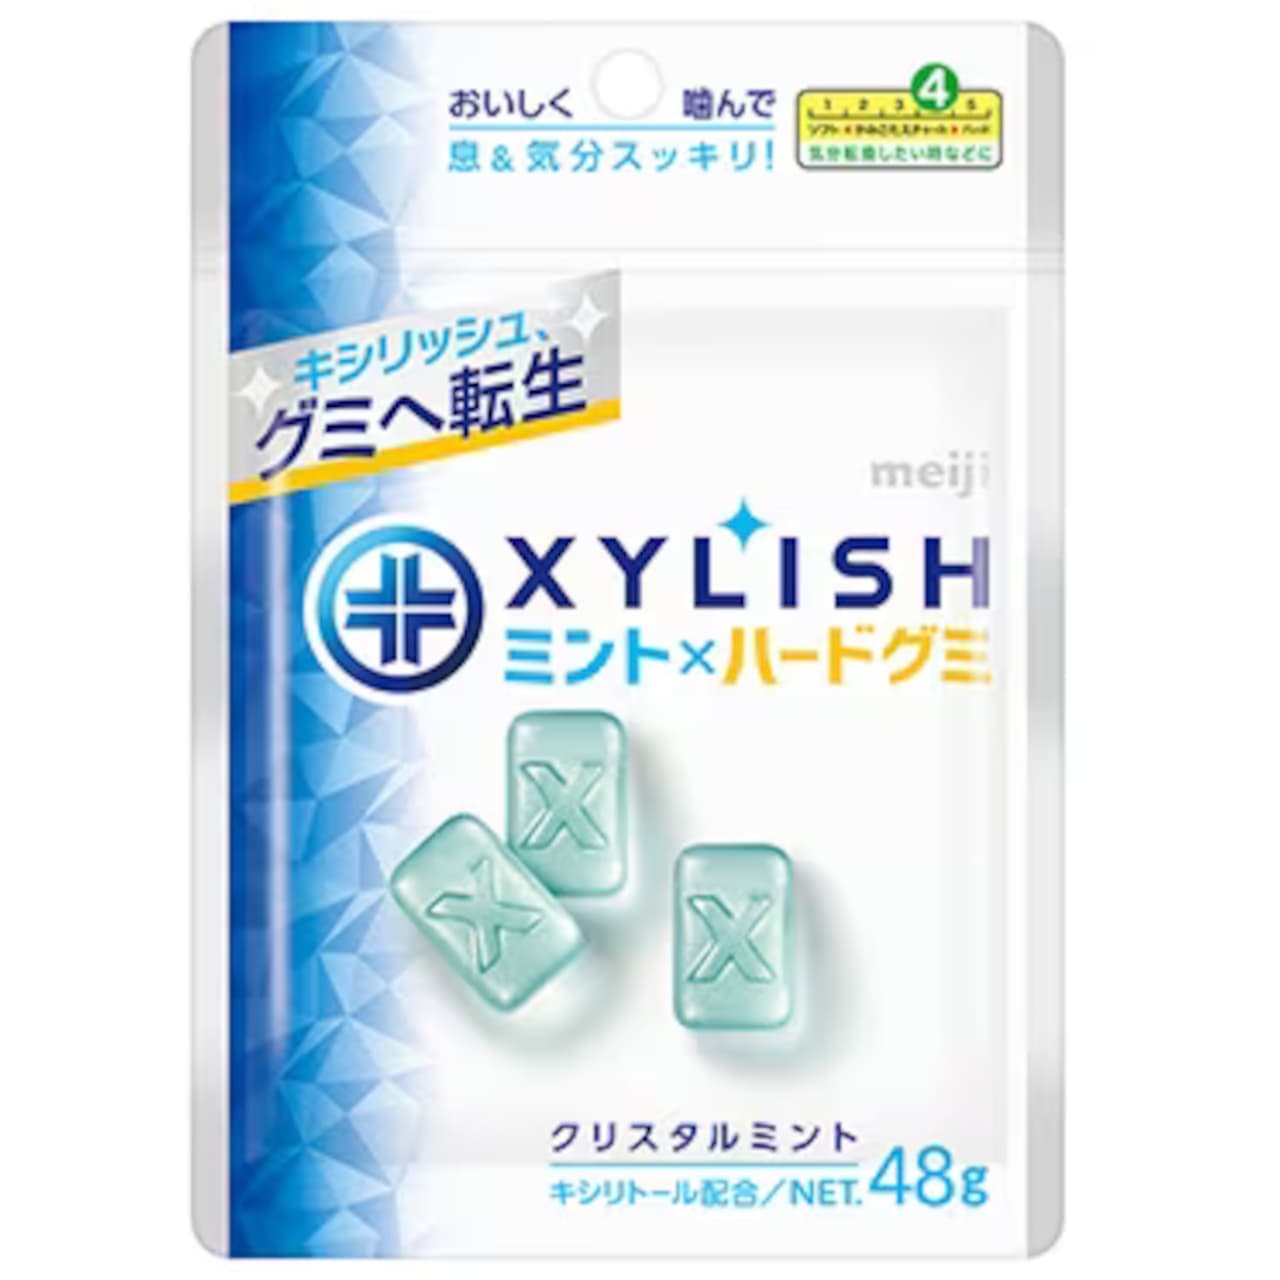 Meiji "Xirish Gummi Crystal Mint".